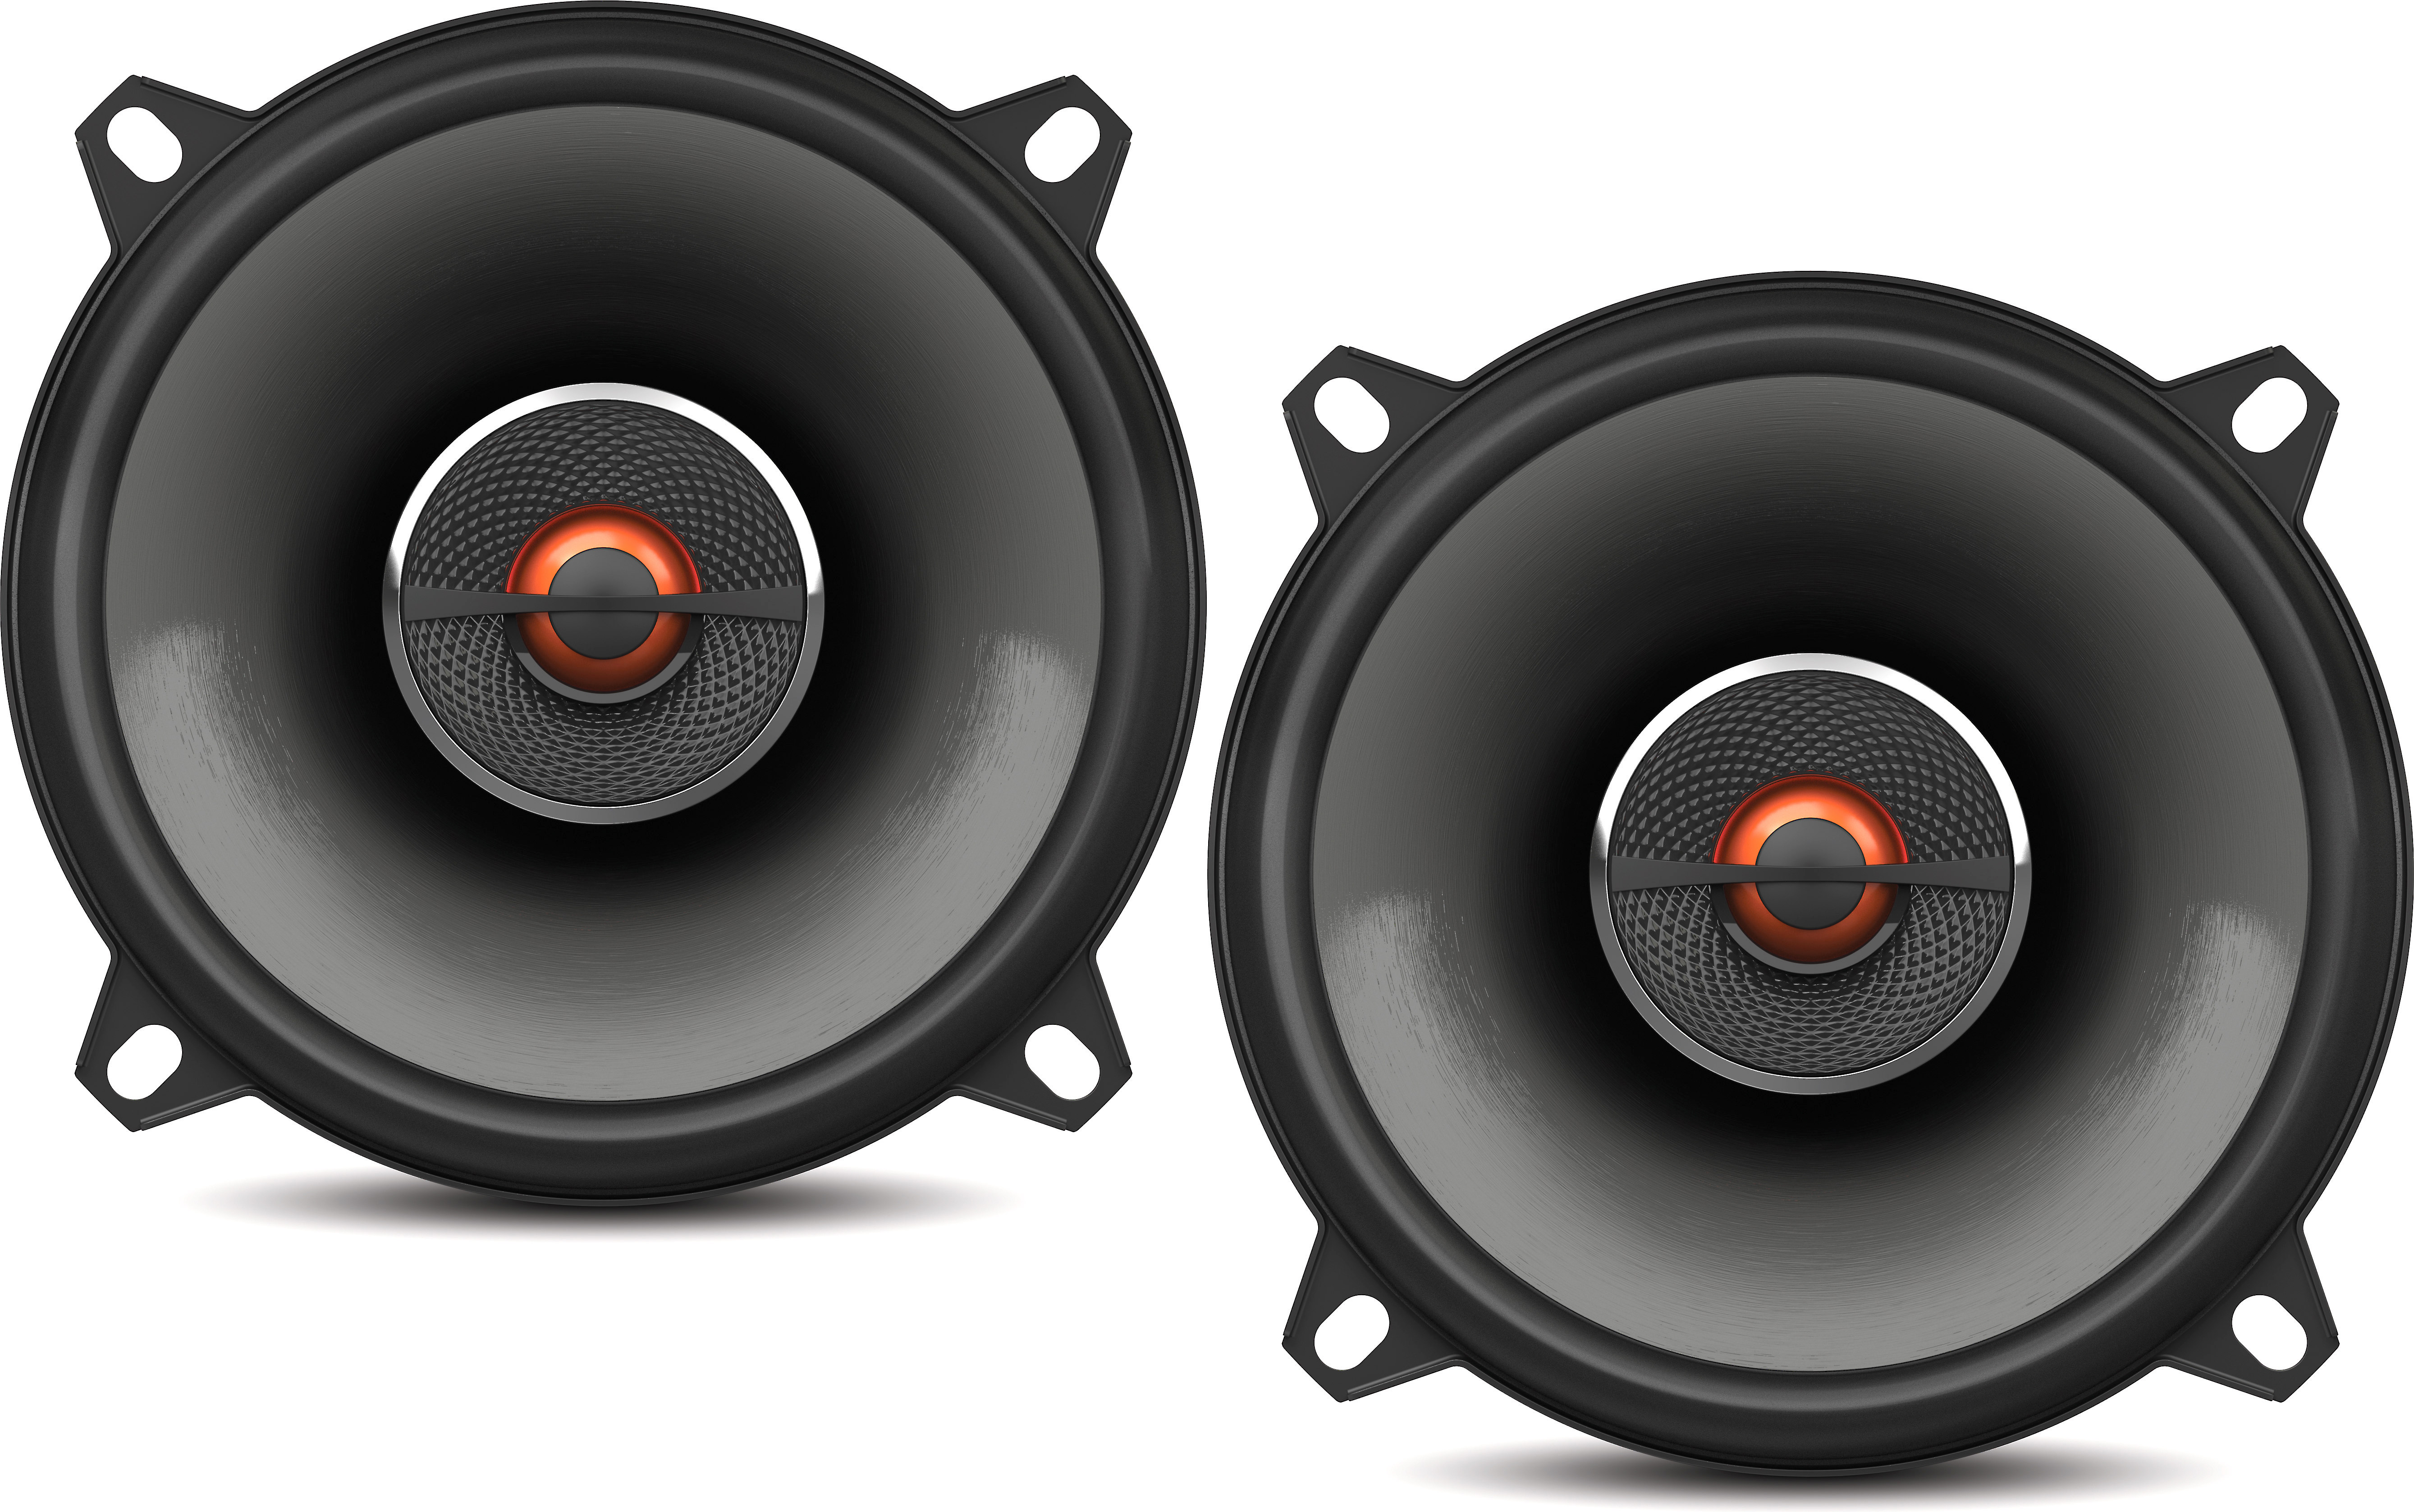 jbl 2 inch speakers